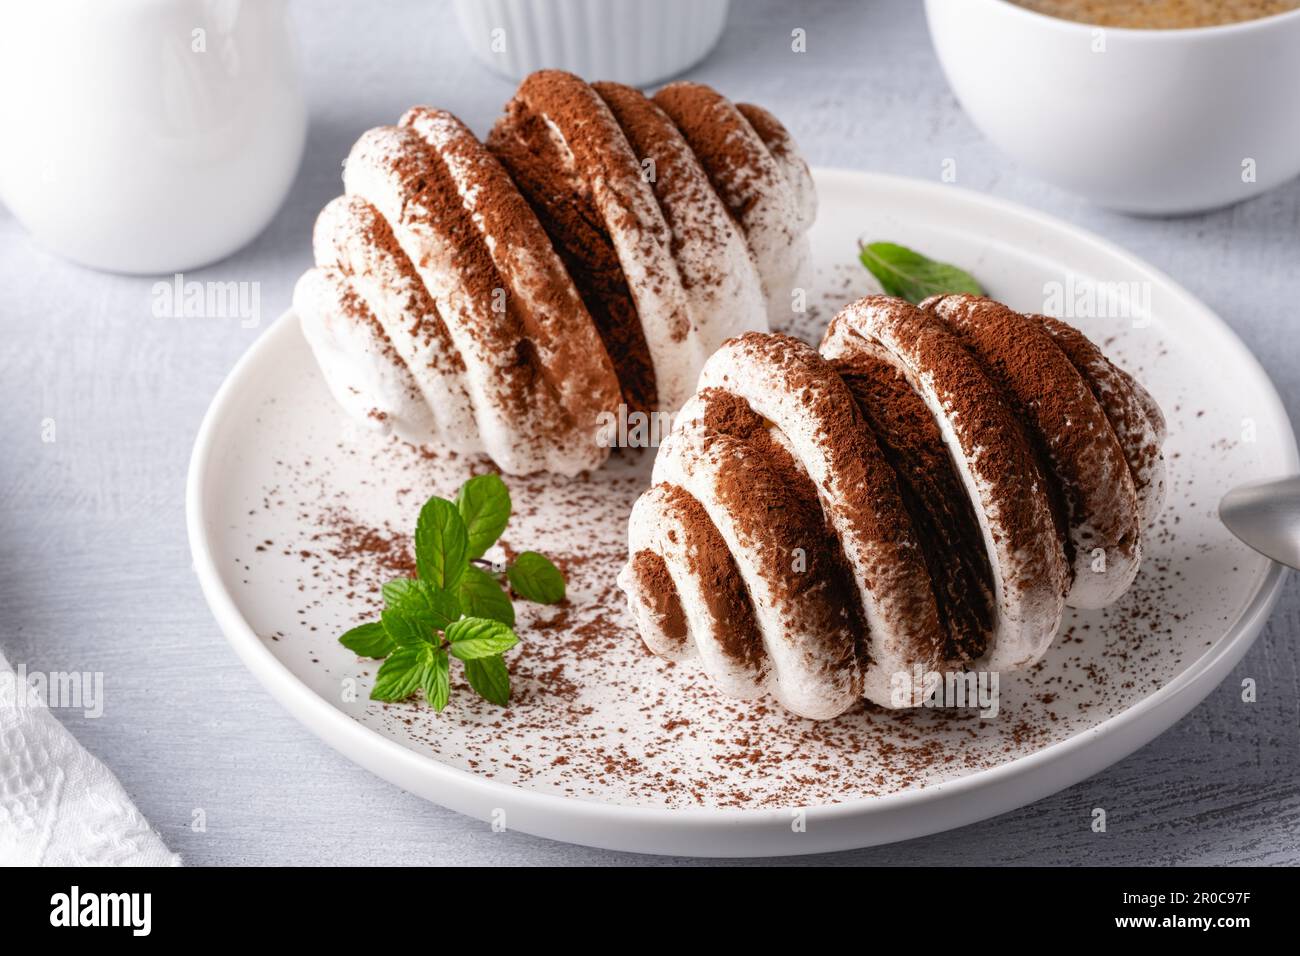 Biscotti al meringa con cioccolato e tazza di caffè Foto Stock